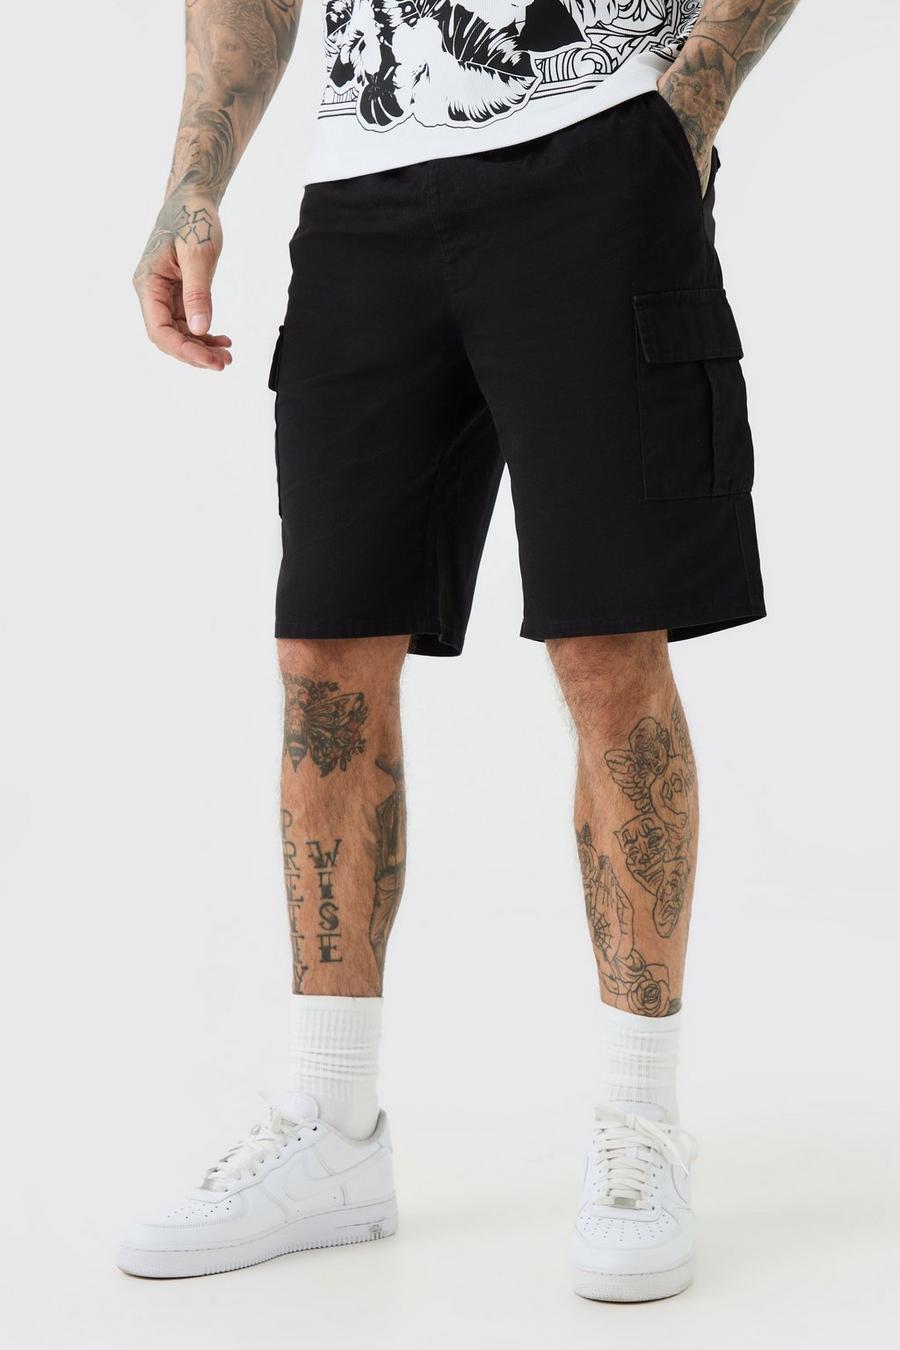 Tall lockere Cargo-Shorts mit elastischem Bund in Schwarz, Black